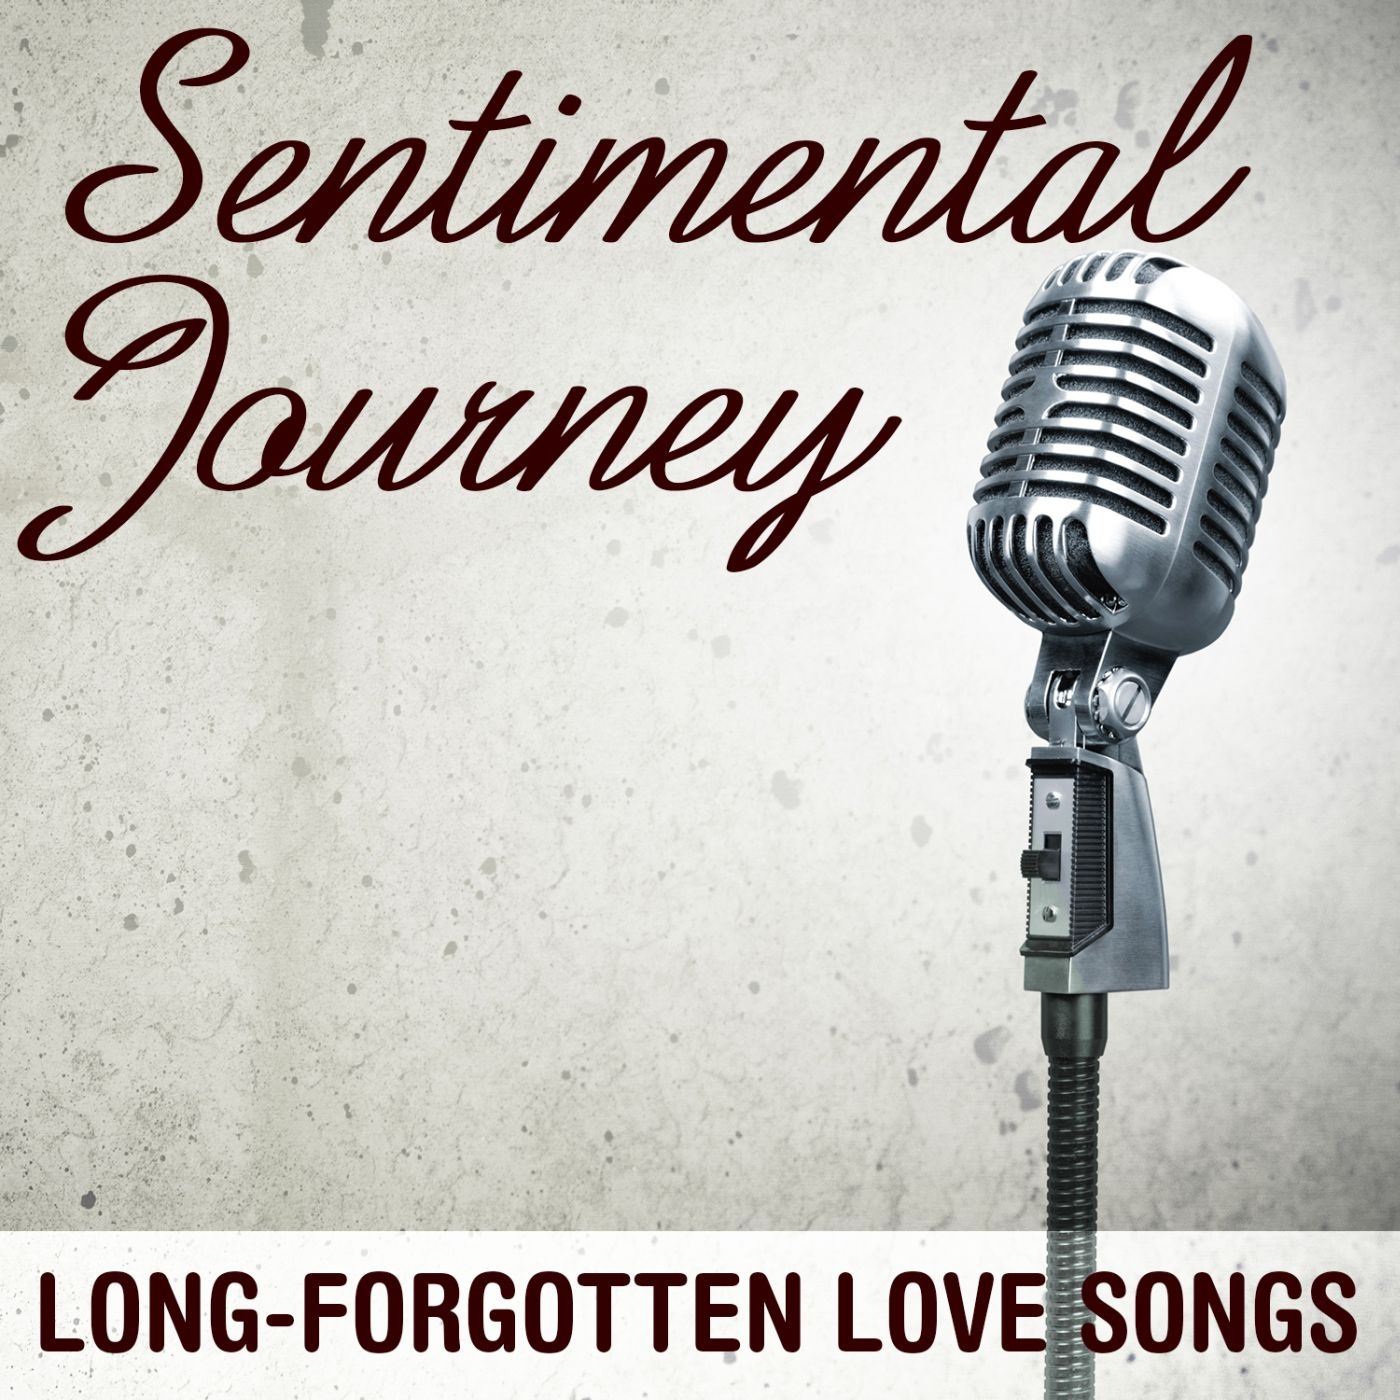 Sentimental Journey: Long-Forgotten Love Songs